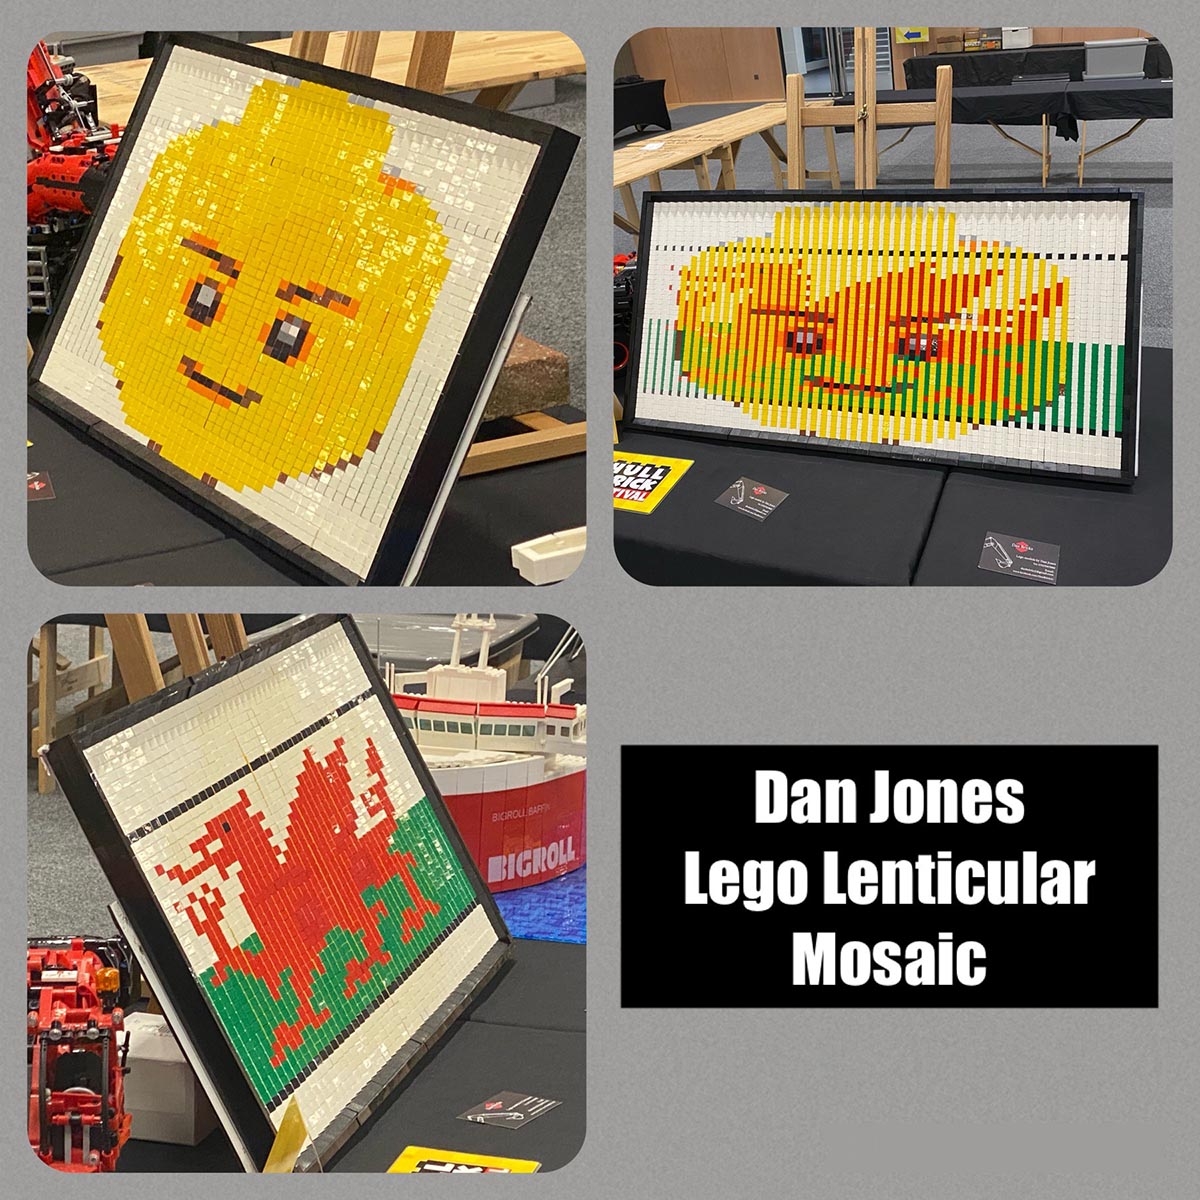 Dan - Age 17 "Lego Lenticular Mosaic"